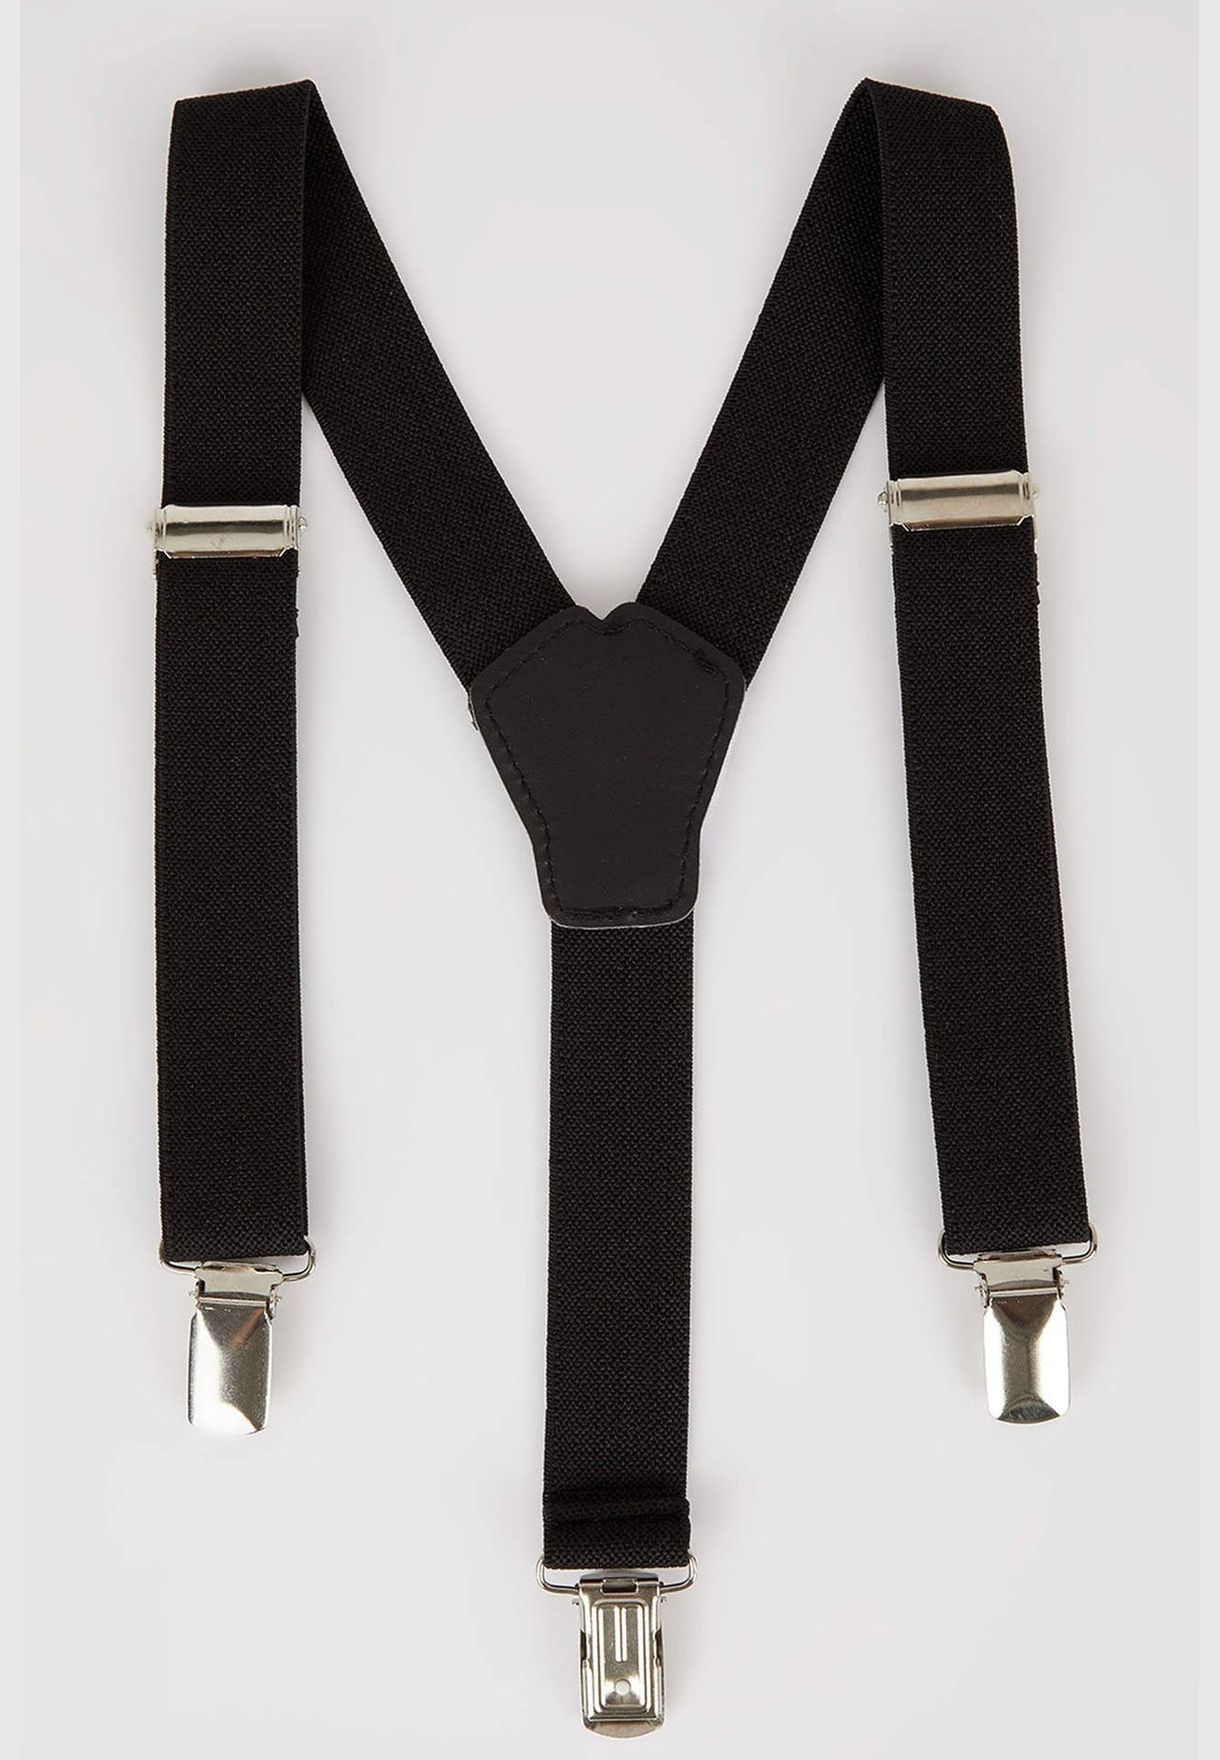 Boy Child Suspenders